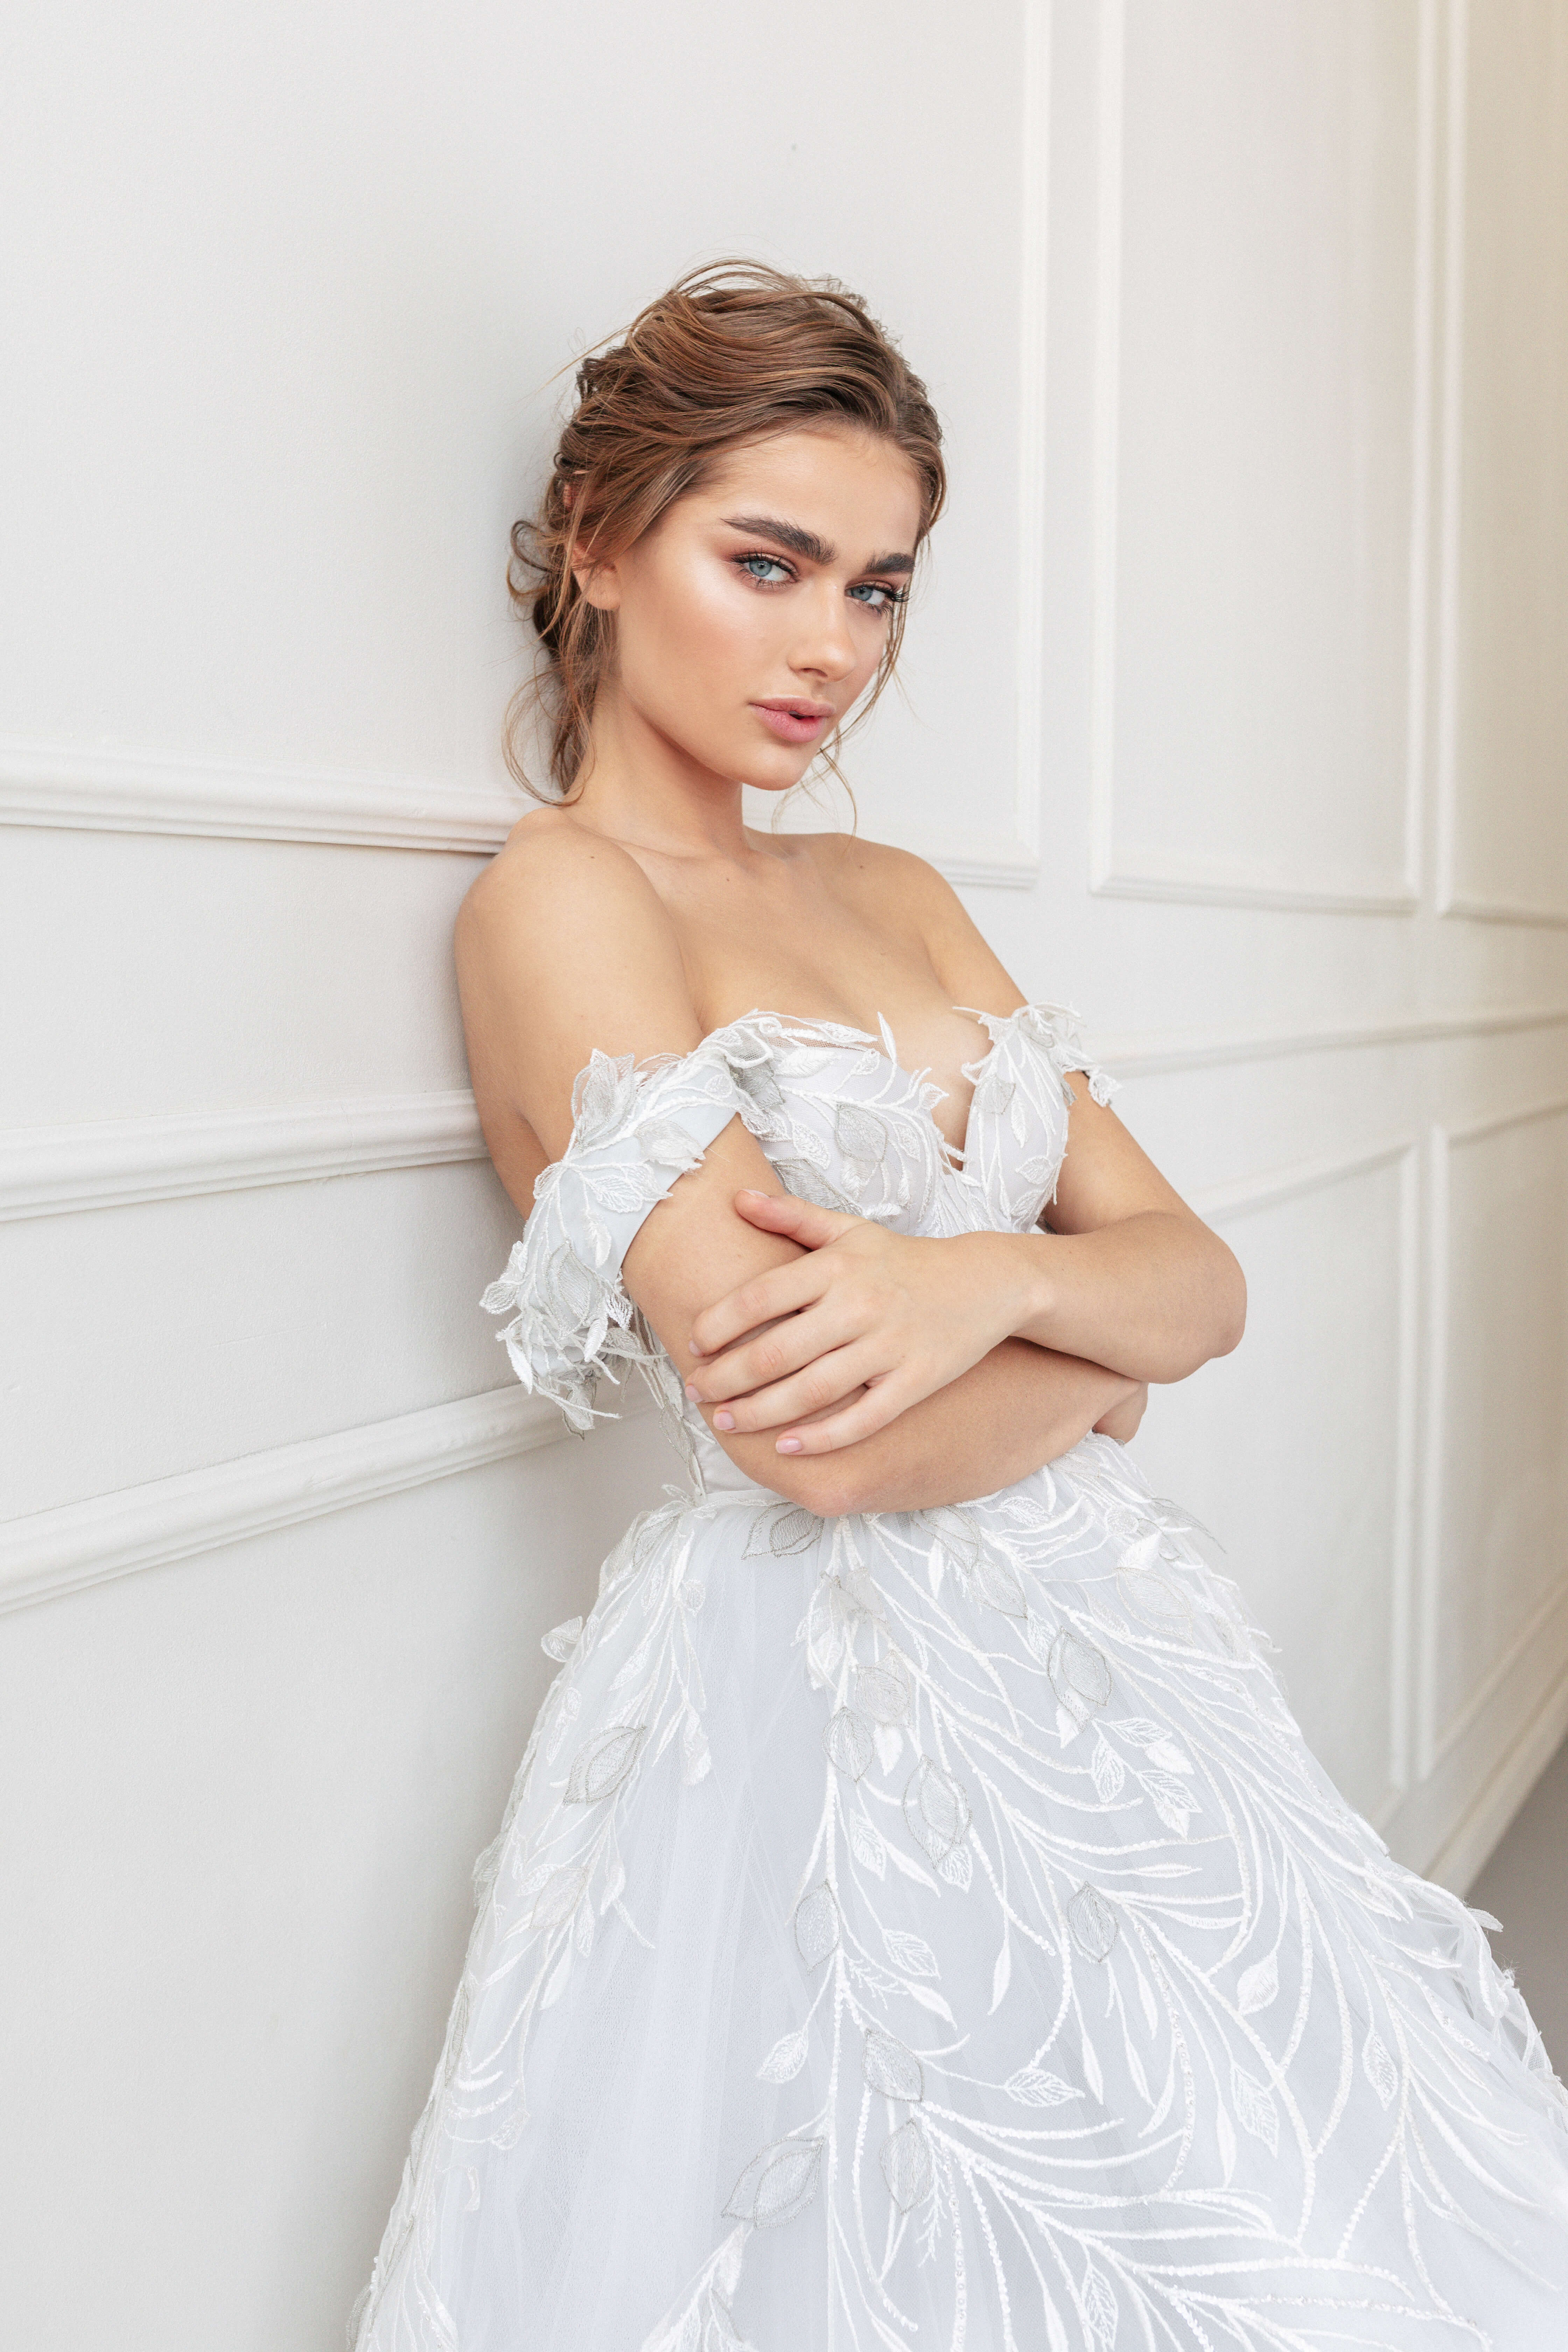 Купить свадебное платье «Маргарет» Анже Этуаль из коллекции 2020 года в салоне «Мэри Трюфель»